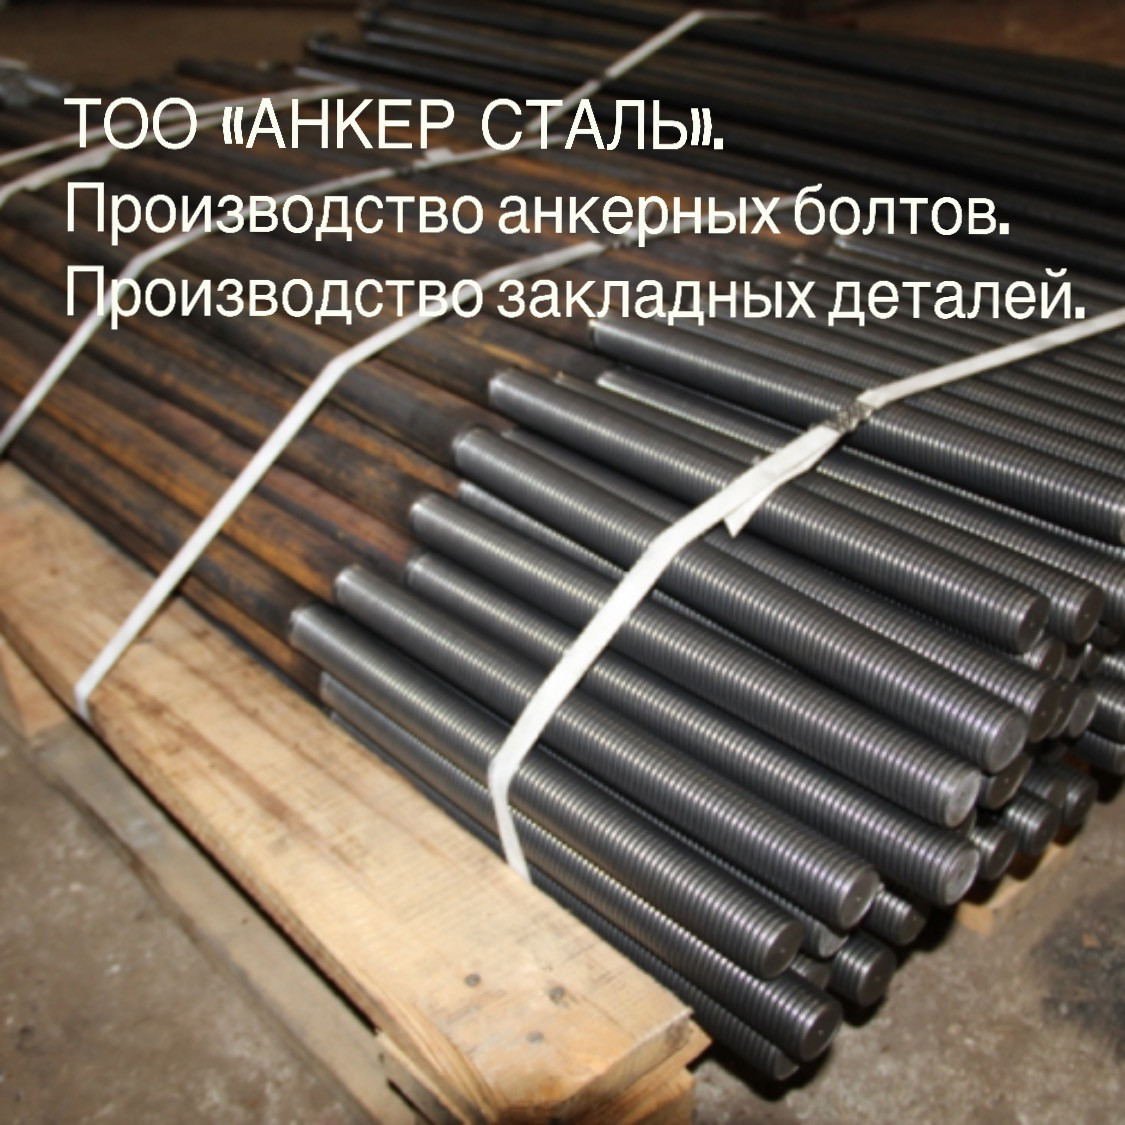 Изготовление анкерных болтов и закладных деталей в Казахстане